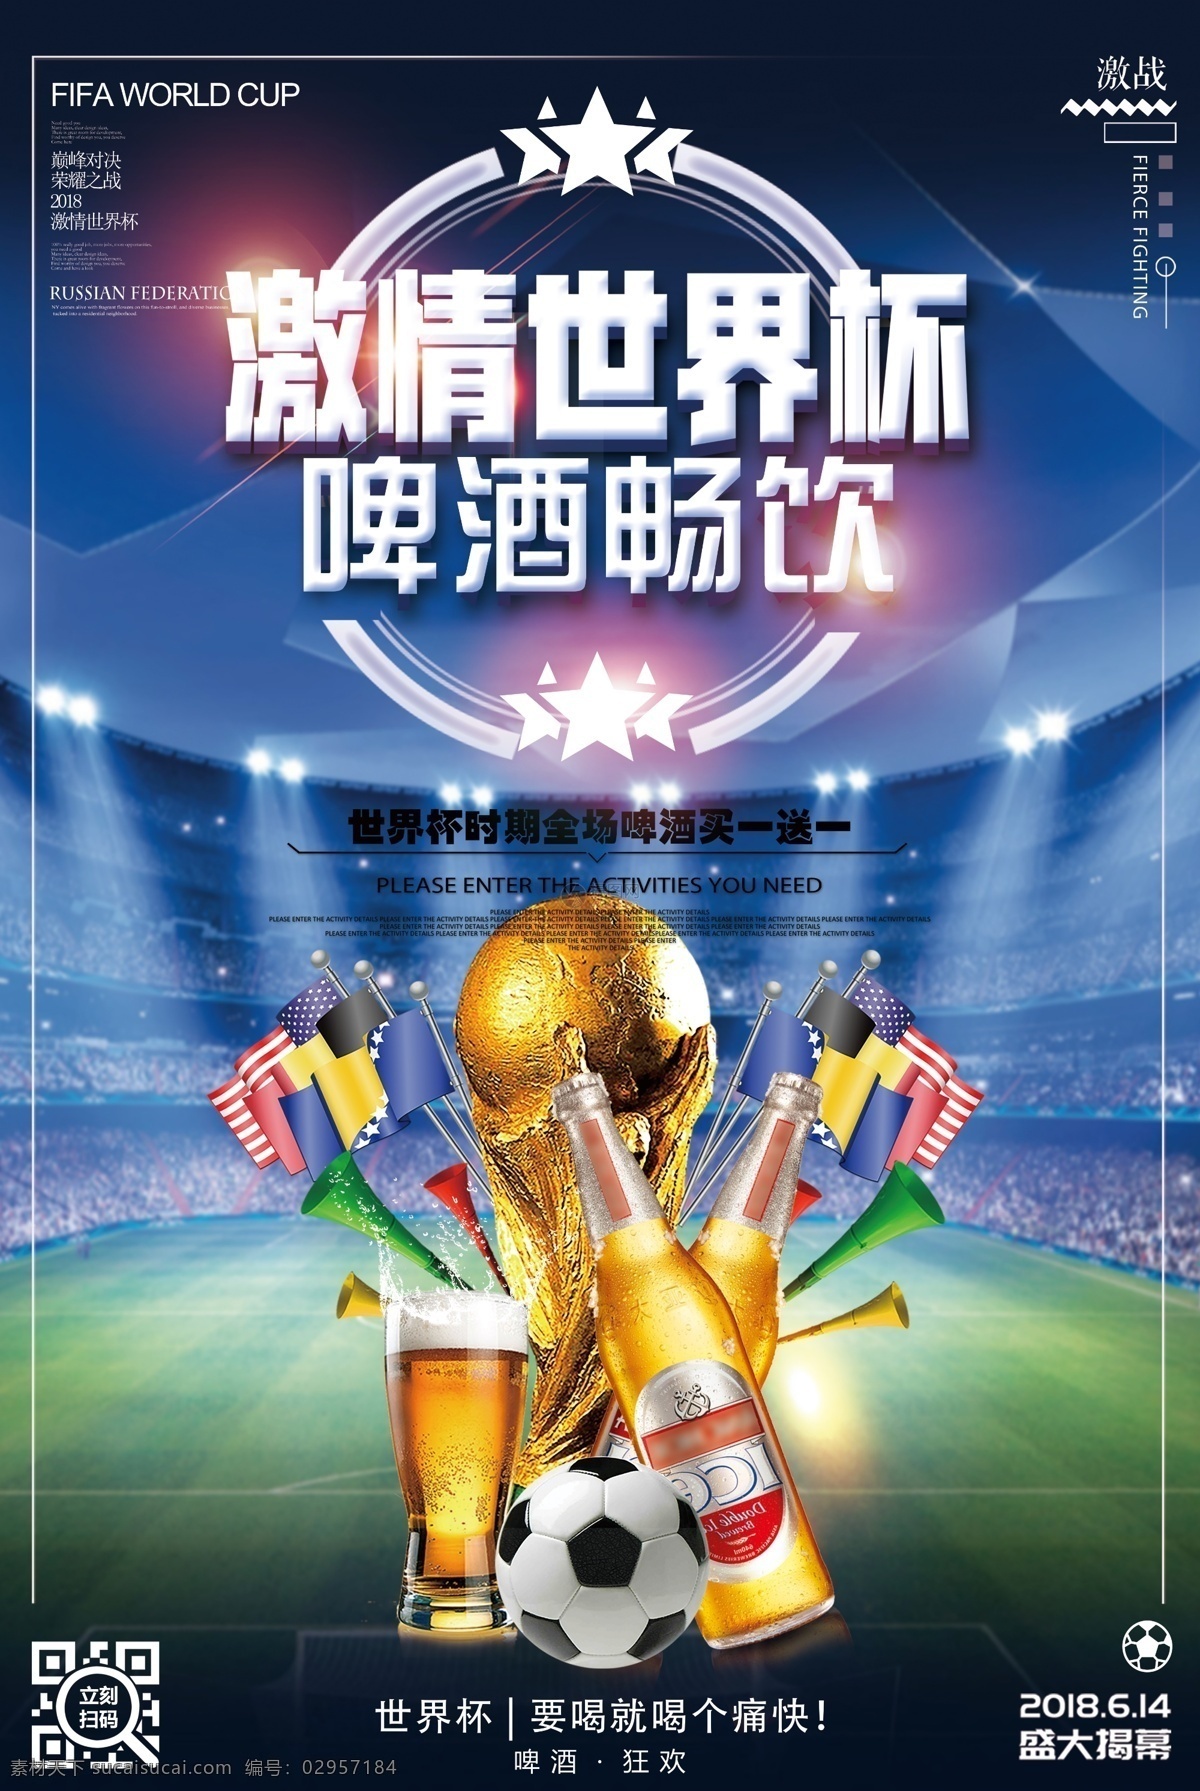 世界杯 啤酒 畅饮 海报 宣传海报 俄罗斯世界杯 球迷 足球 比赛 足球比赛 喝彩 激情